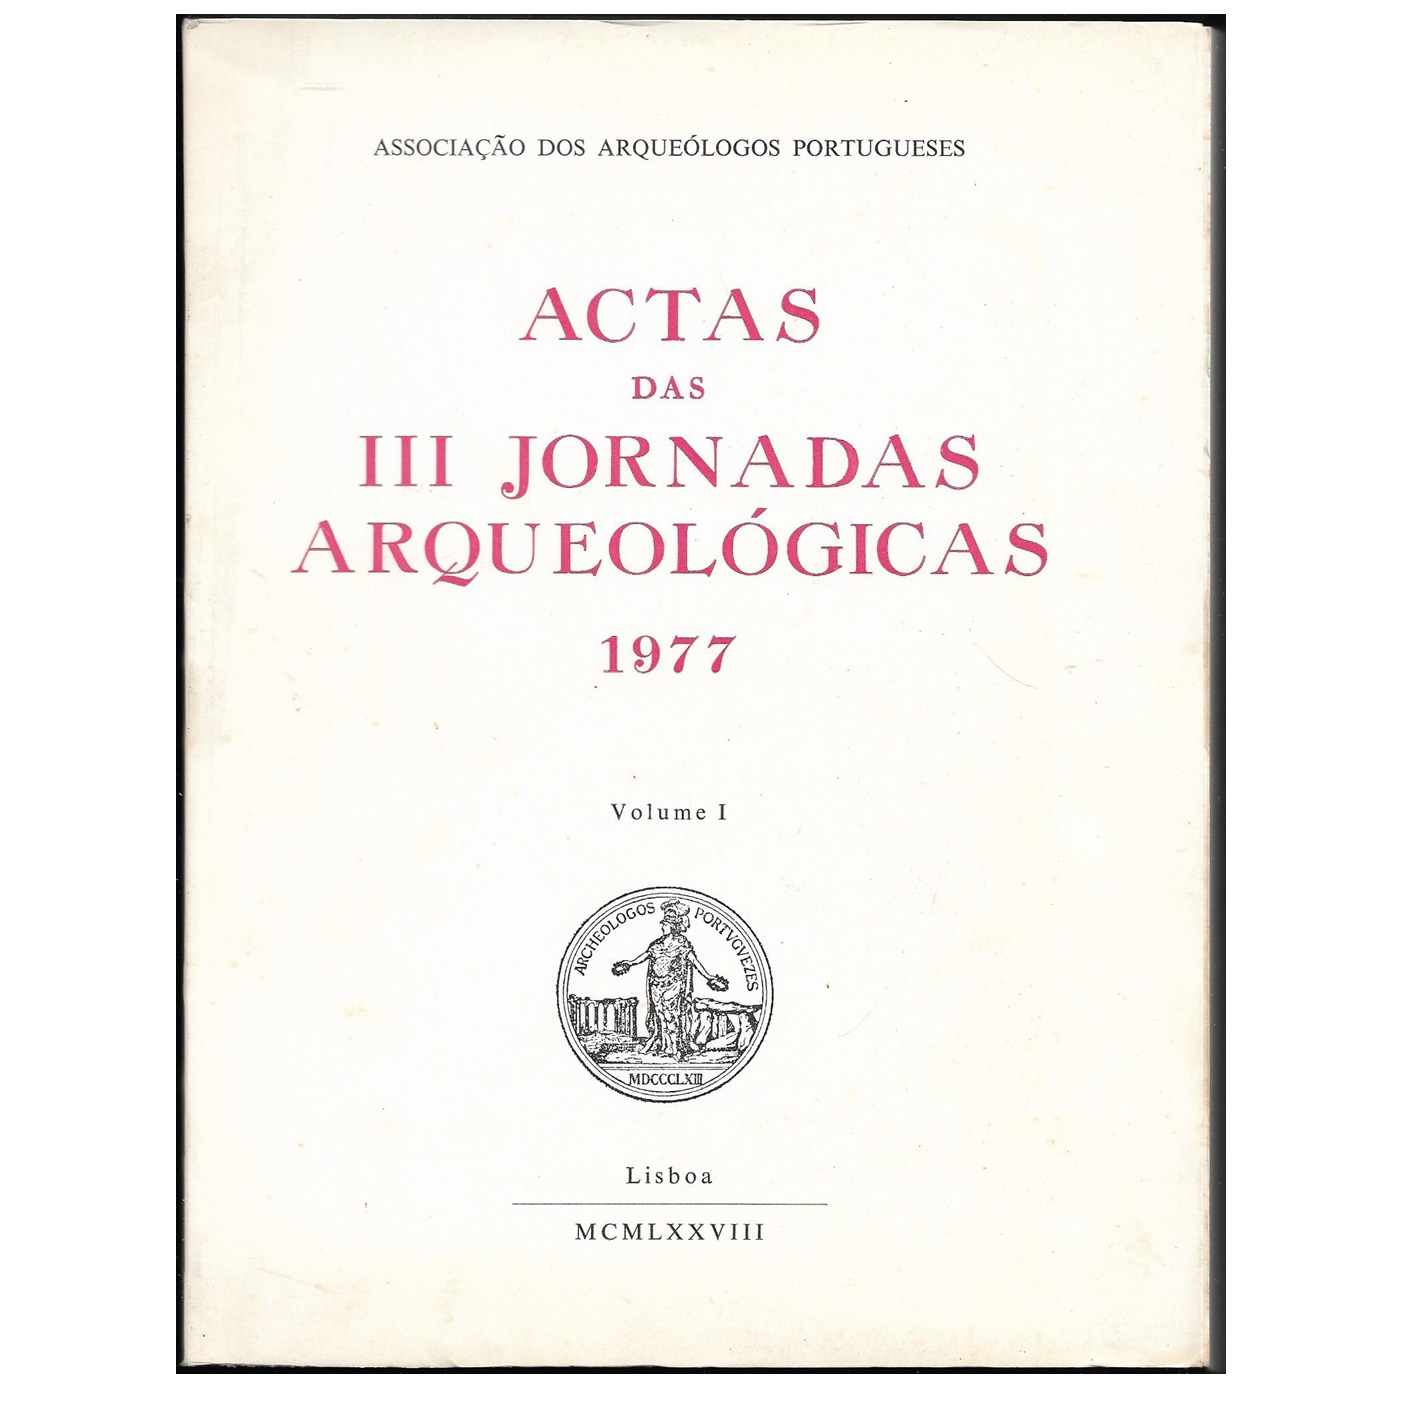 ACTAS DAS III JORNADAS ARQUEOLÓGICAS